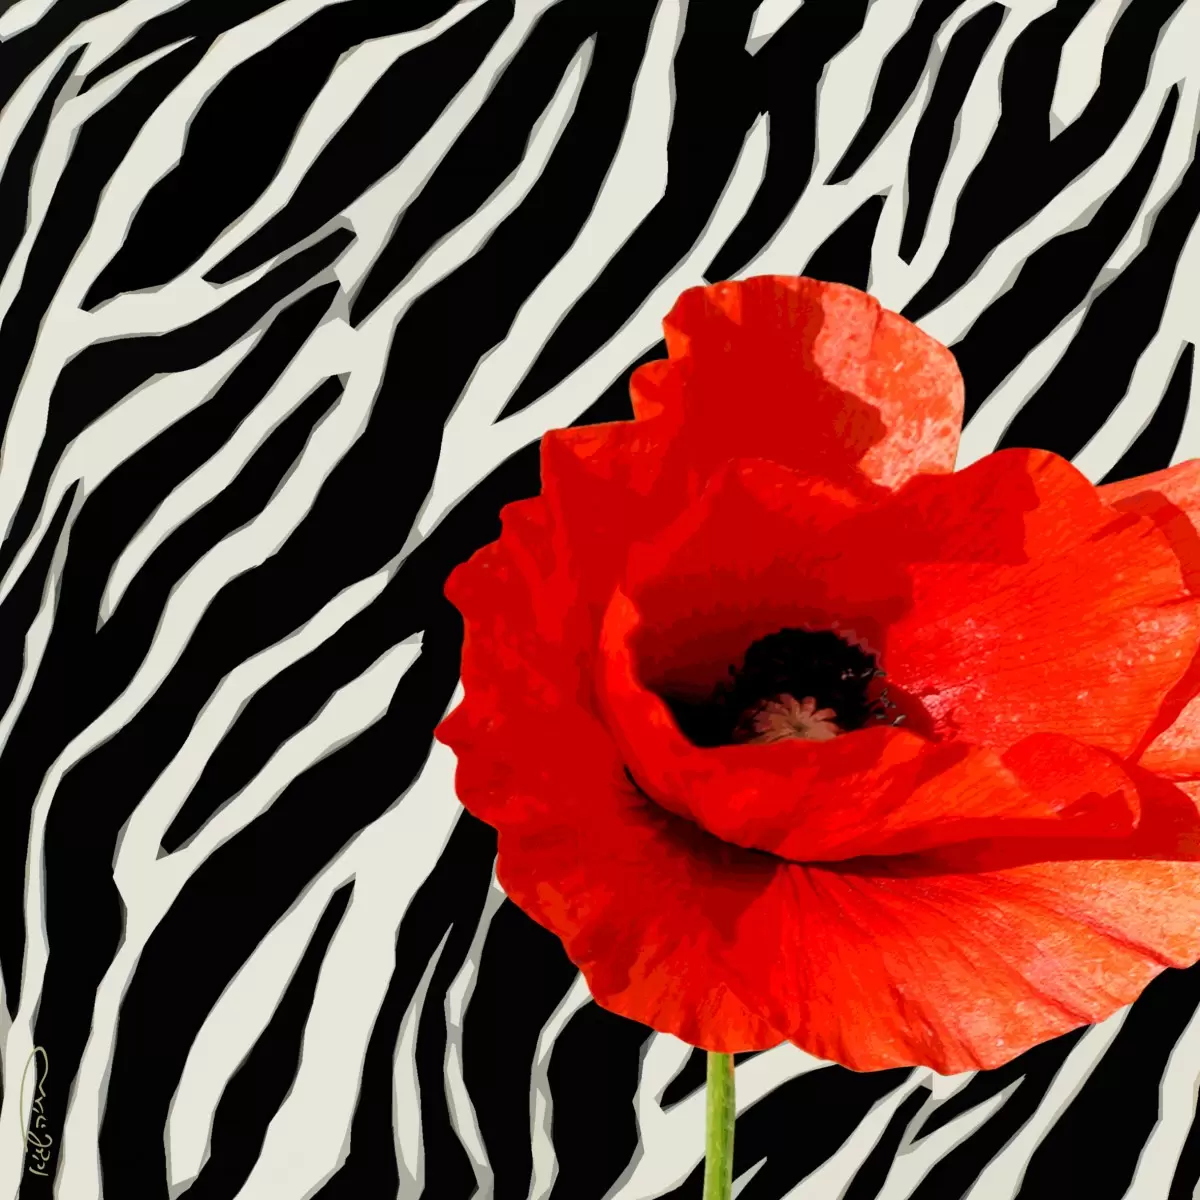 אדום-שחור-לבן - בתיה שגיא - תמונות רומנטיות לחדר שינה אבסטרקט פרחוני ובוטני סטים בסגנון מודרני  - מק''ט: 70616